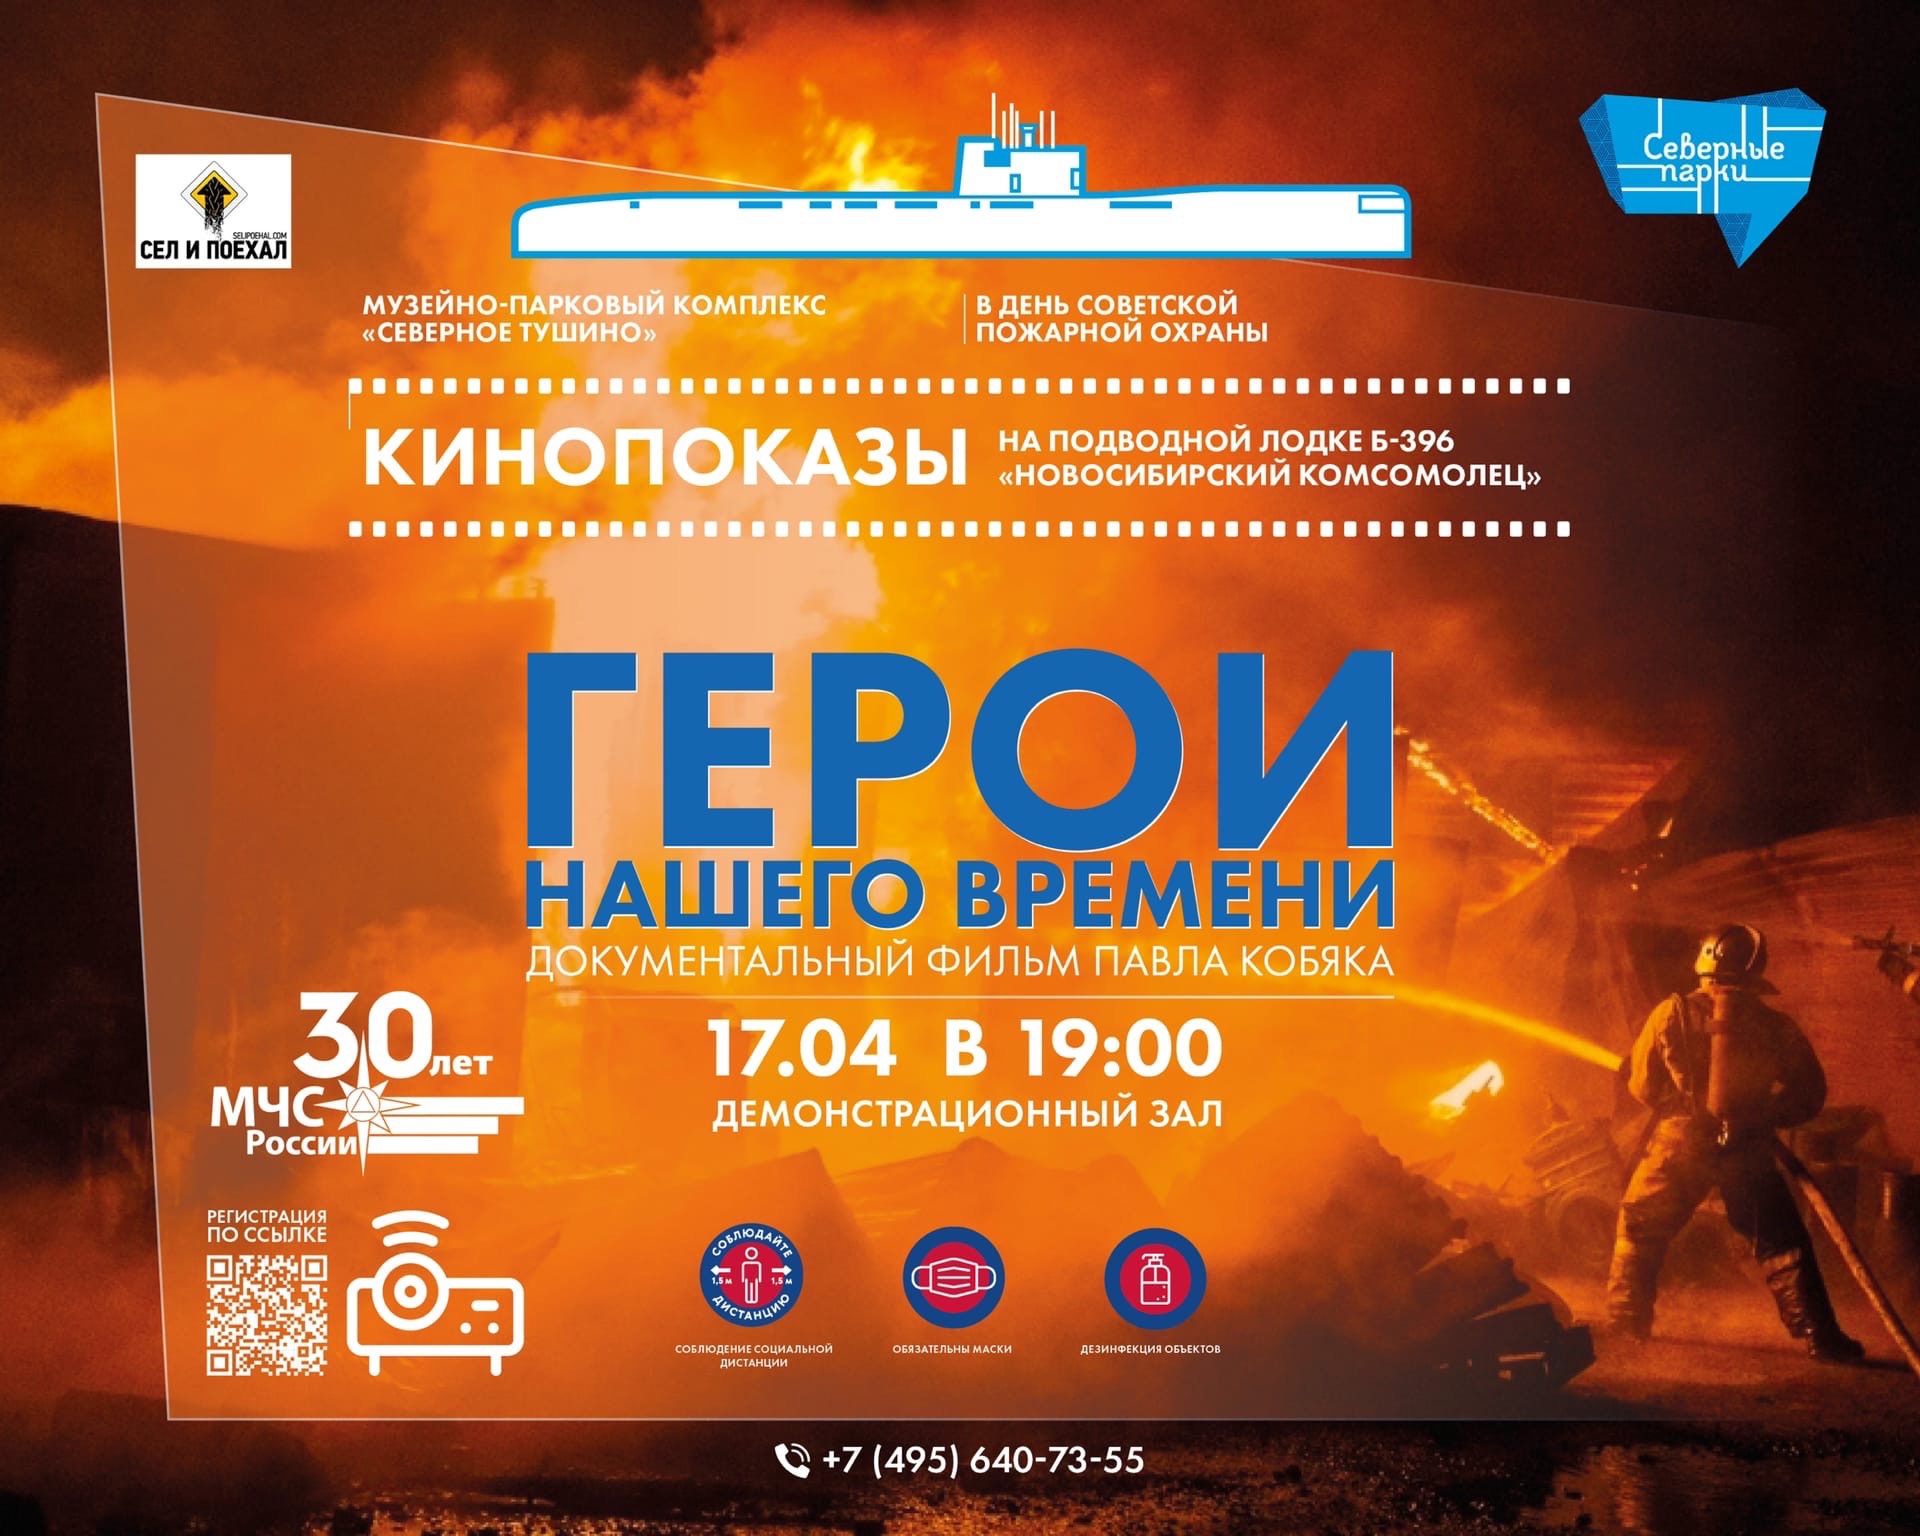 В музее ВМФ 17 апреля пройдет показ документального фильма Павла Кобяка